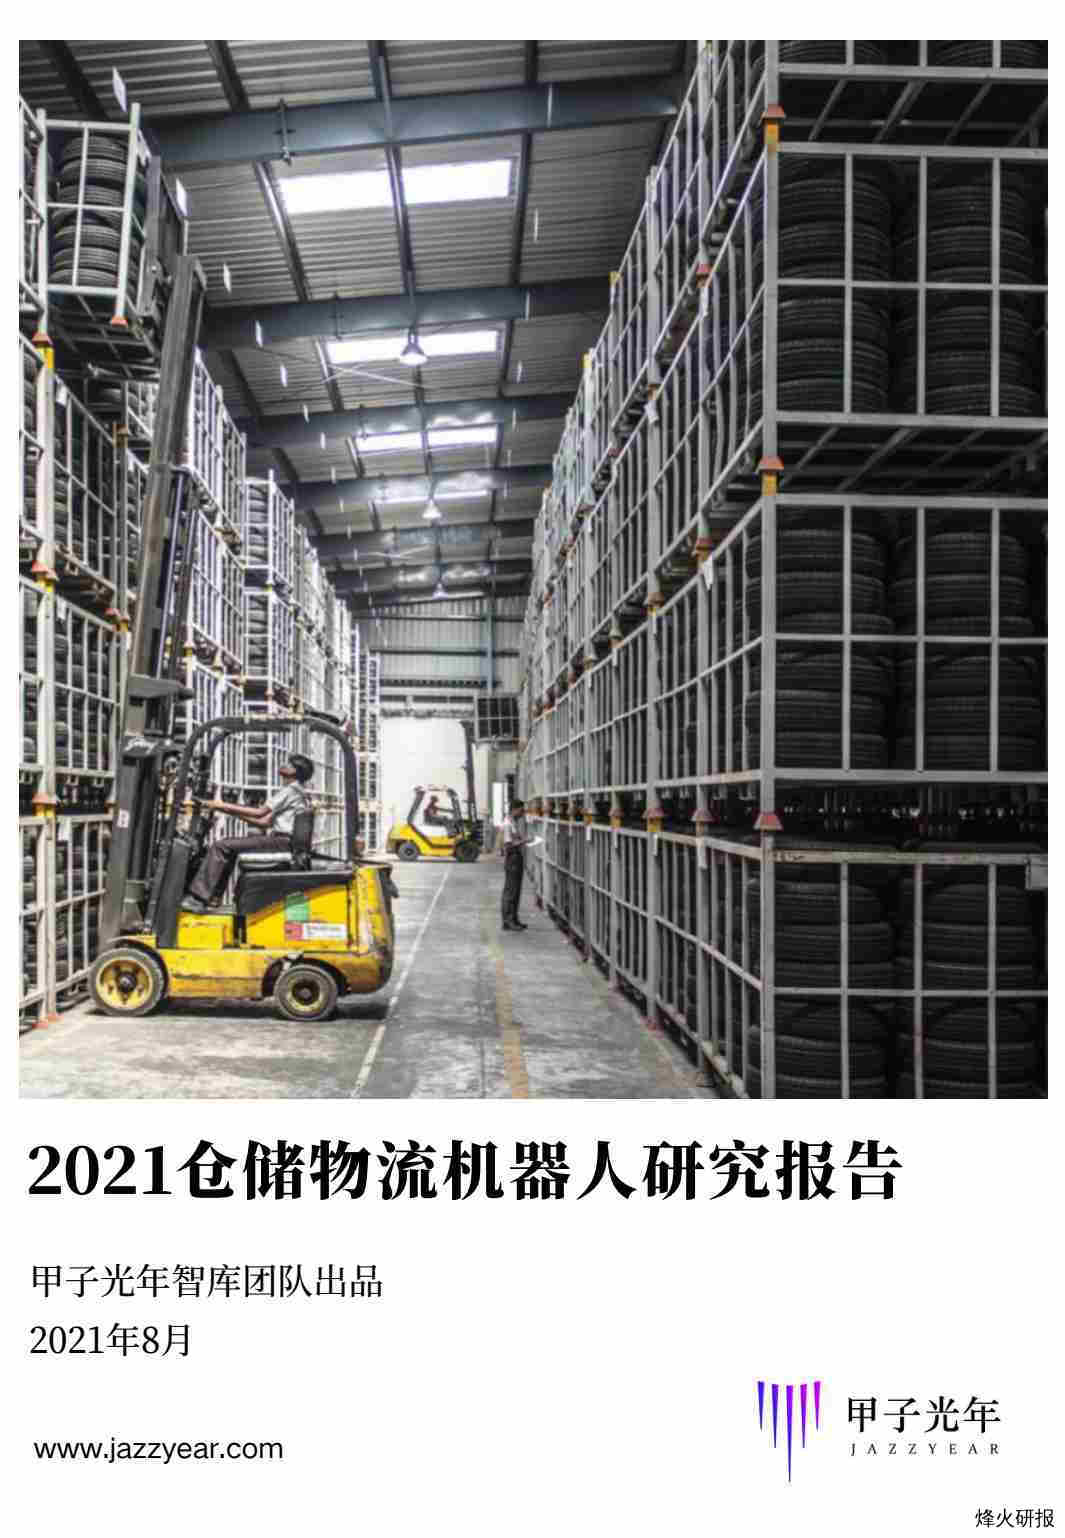 【甲子光年】2021仓储物流机器人行业研究报告_甲子光年.pdf-第一页